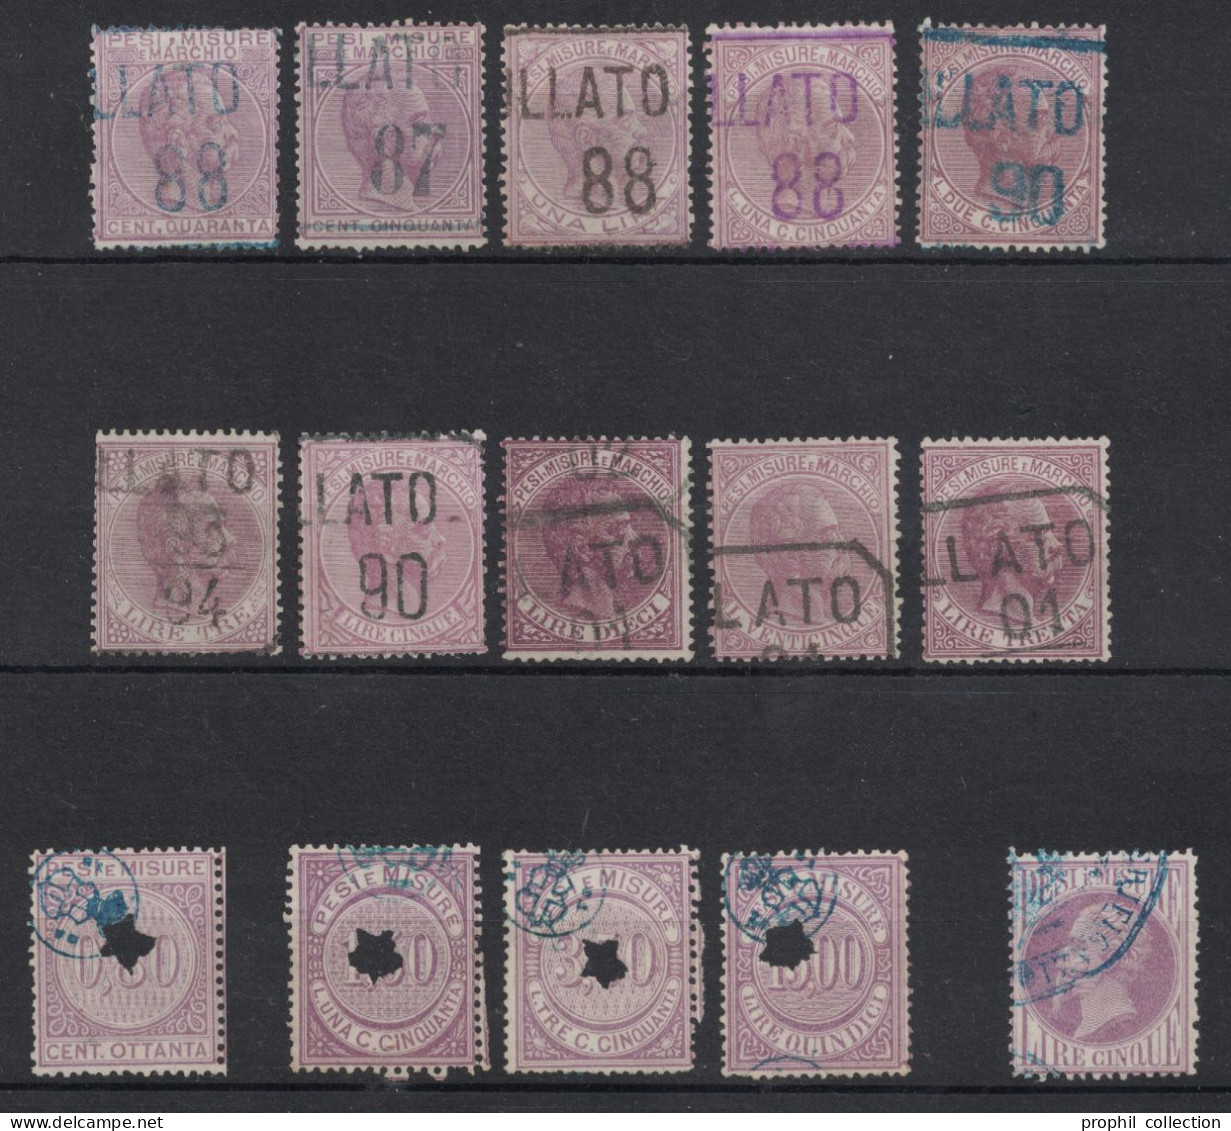 LOT De 15 TIMBRES FISCAUX D'ITALIE MARCA DA BOLLO PESI E MISURE MARCHIO 1875 - Revenue Stamps